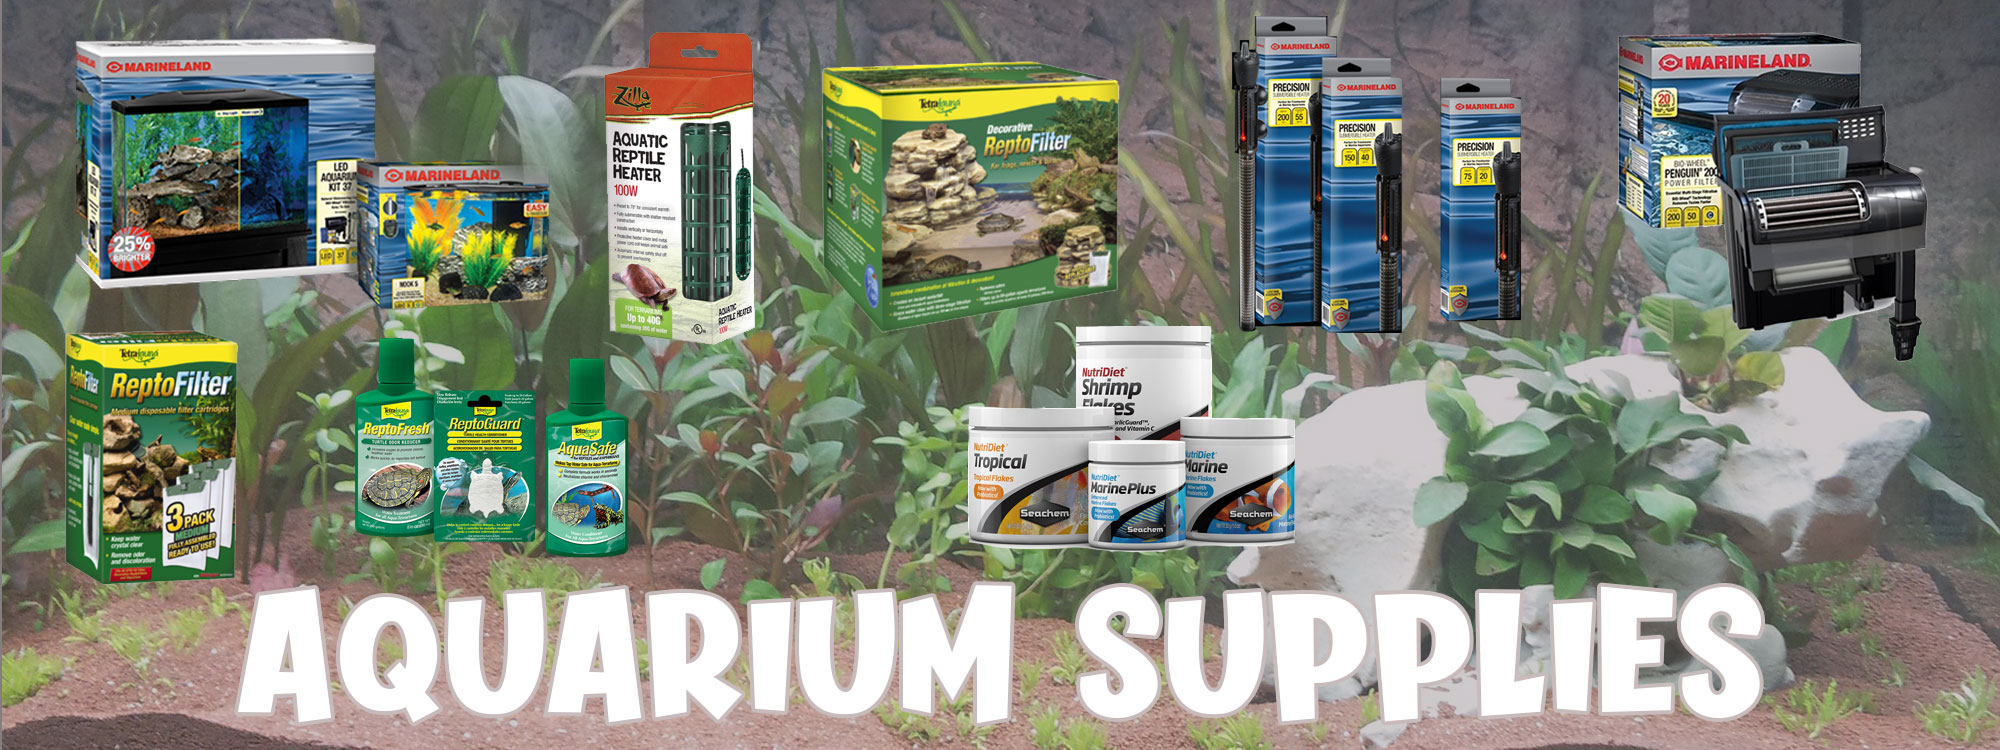 aquarium supplies